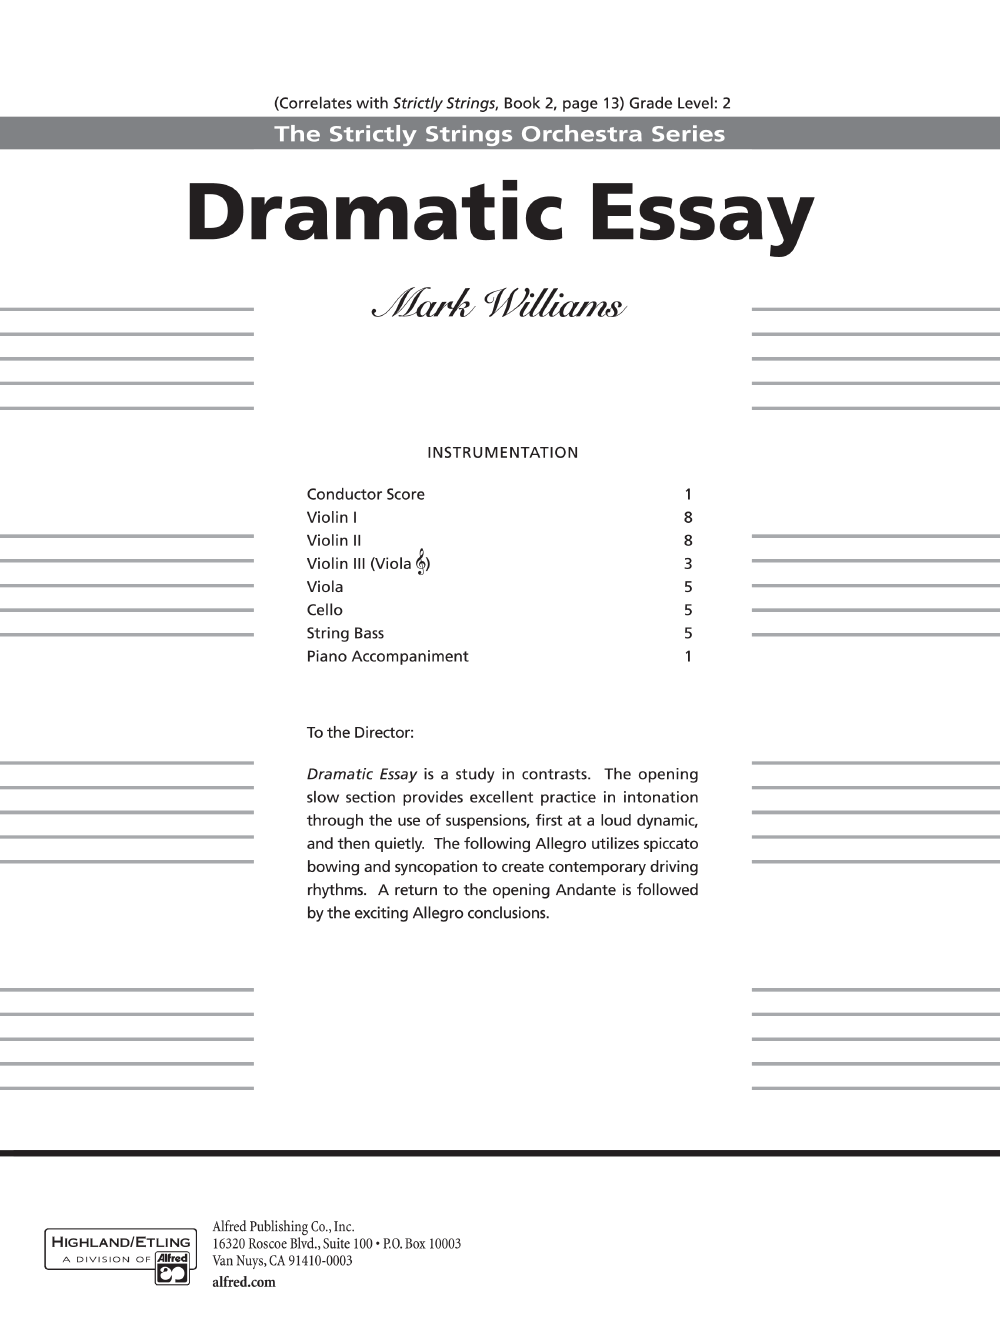 dramatic essay